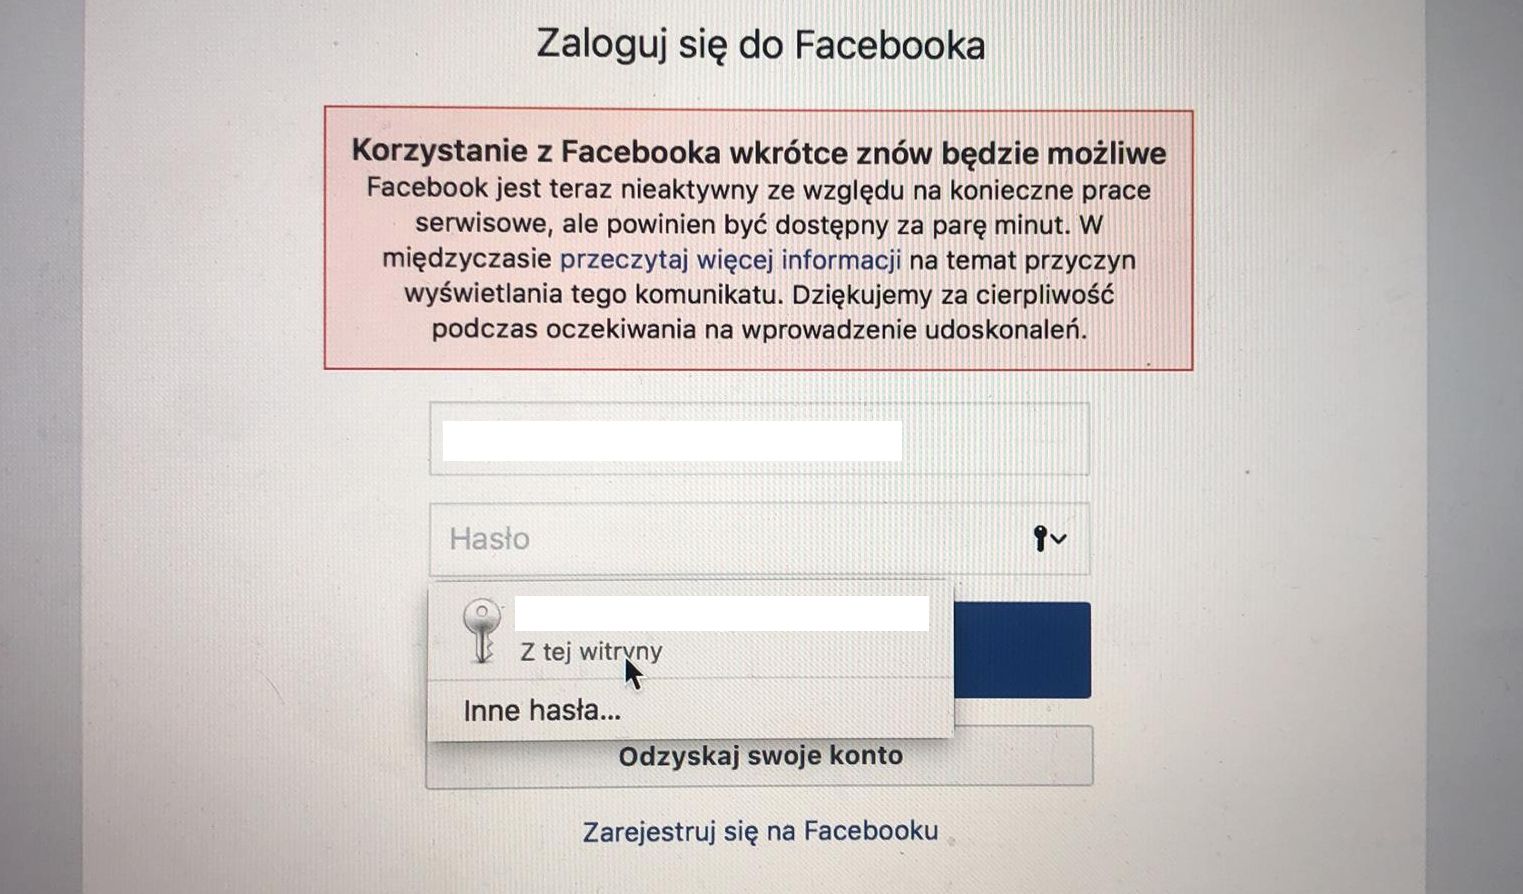 Polscy użytkownicy Facebooka narzekają na trudności w zalogowaniu się do serwisu